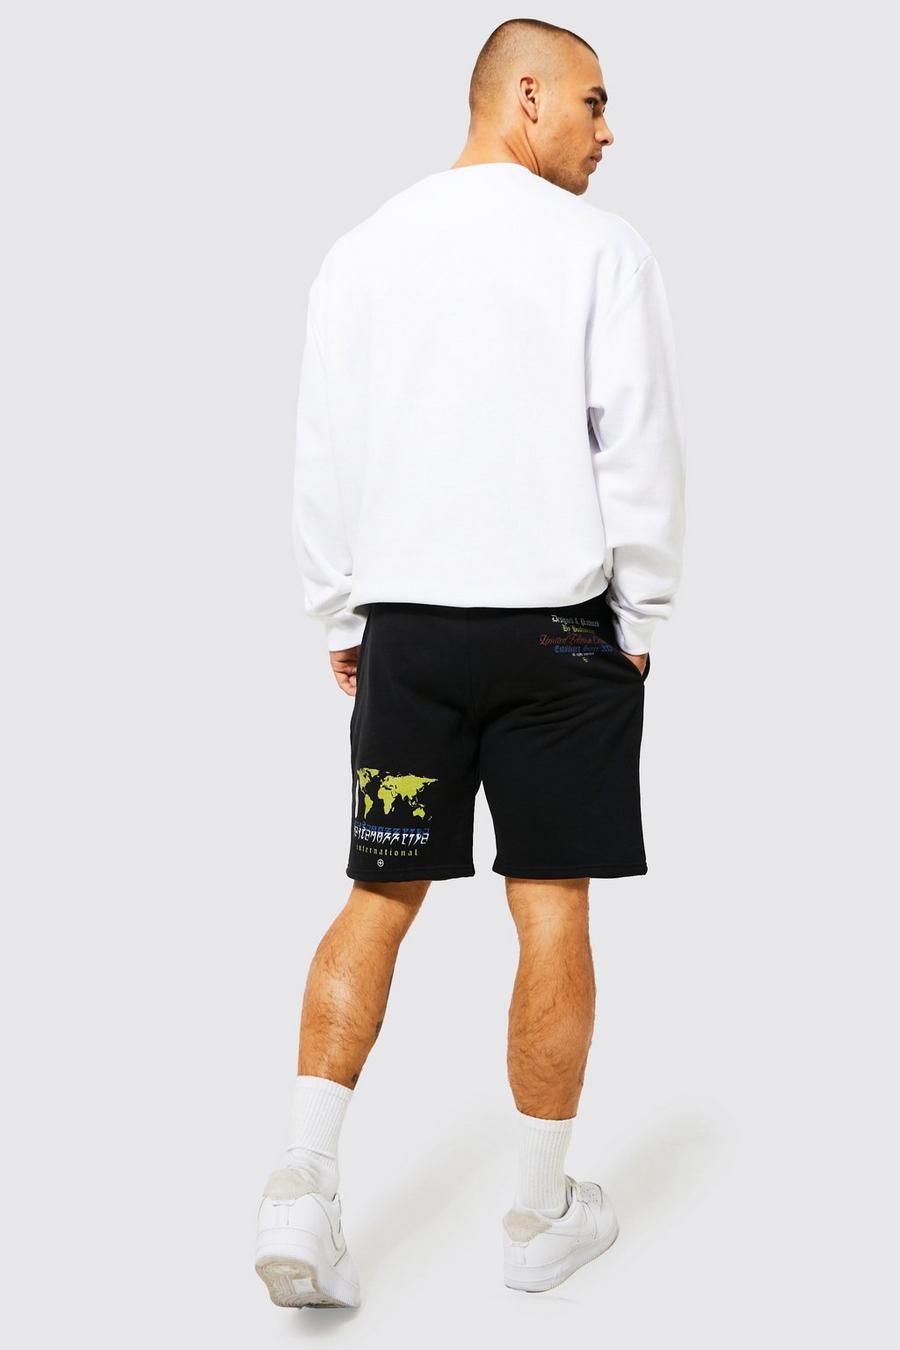 Lockere Jersey-Shorts mit Map-Print, Black schwarz